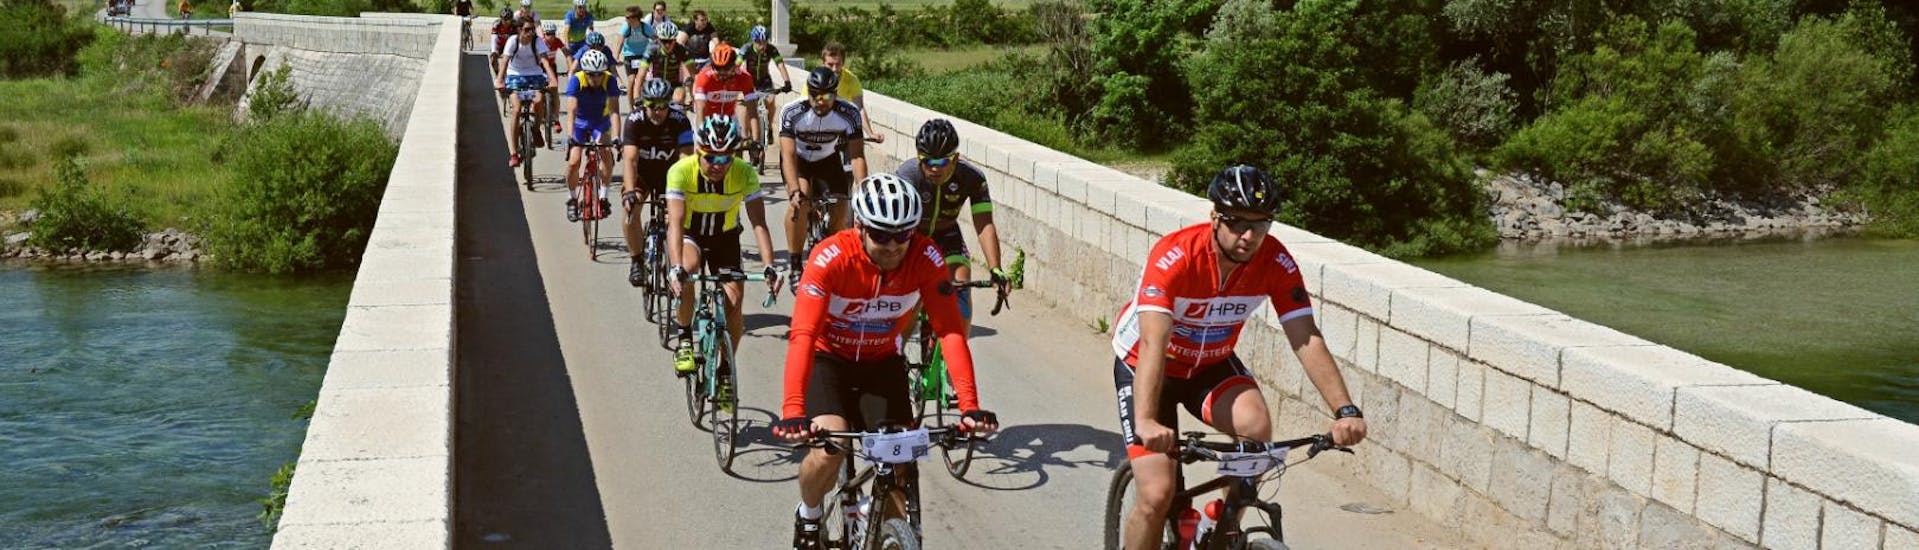 Tijdens de Fun Bike Tour incl. Transfer vanuit Split georganiseerd door Hotel Alkar, een groep fietsers geniet van het rijden in de prachtige Dalmatische regio.